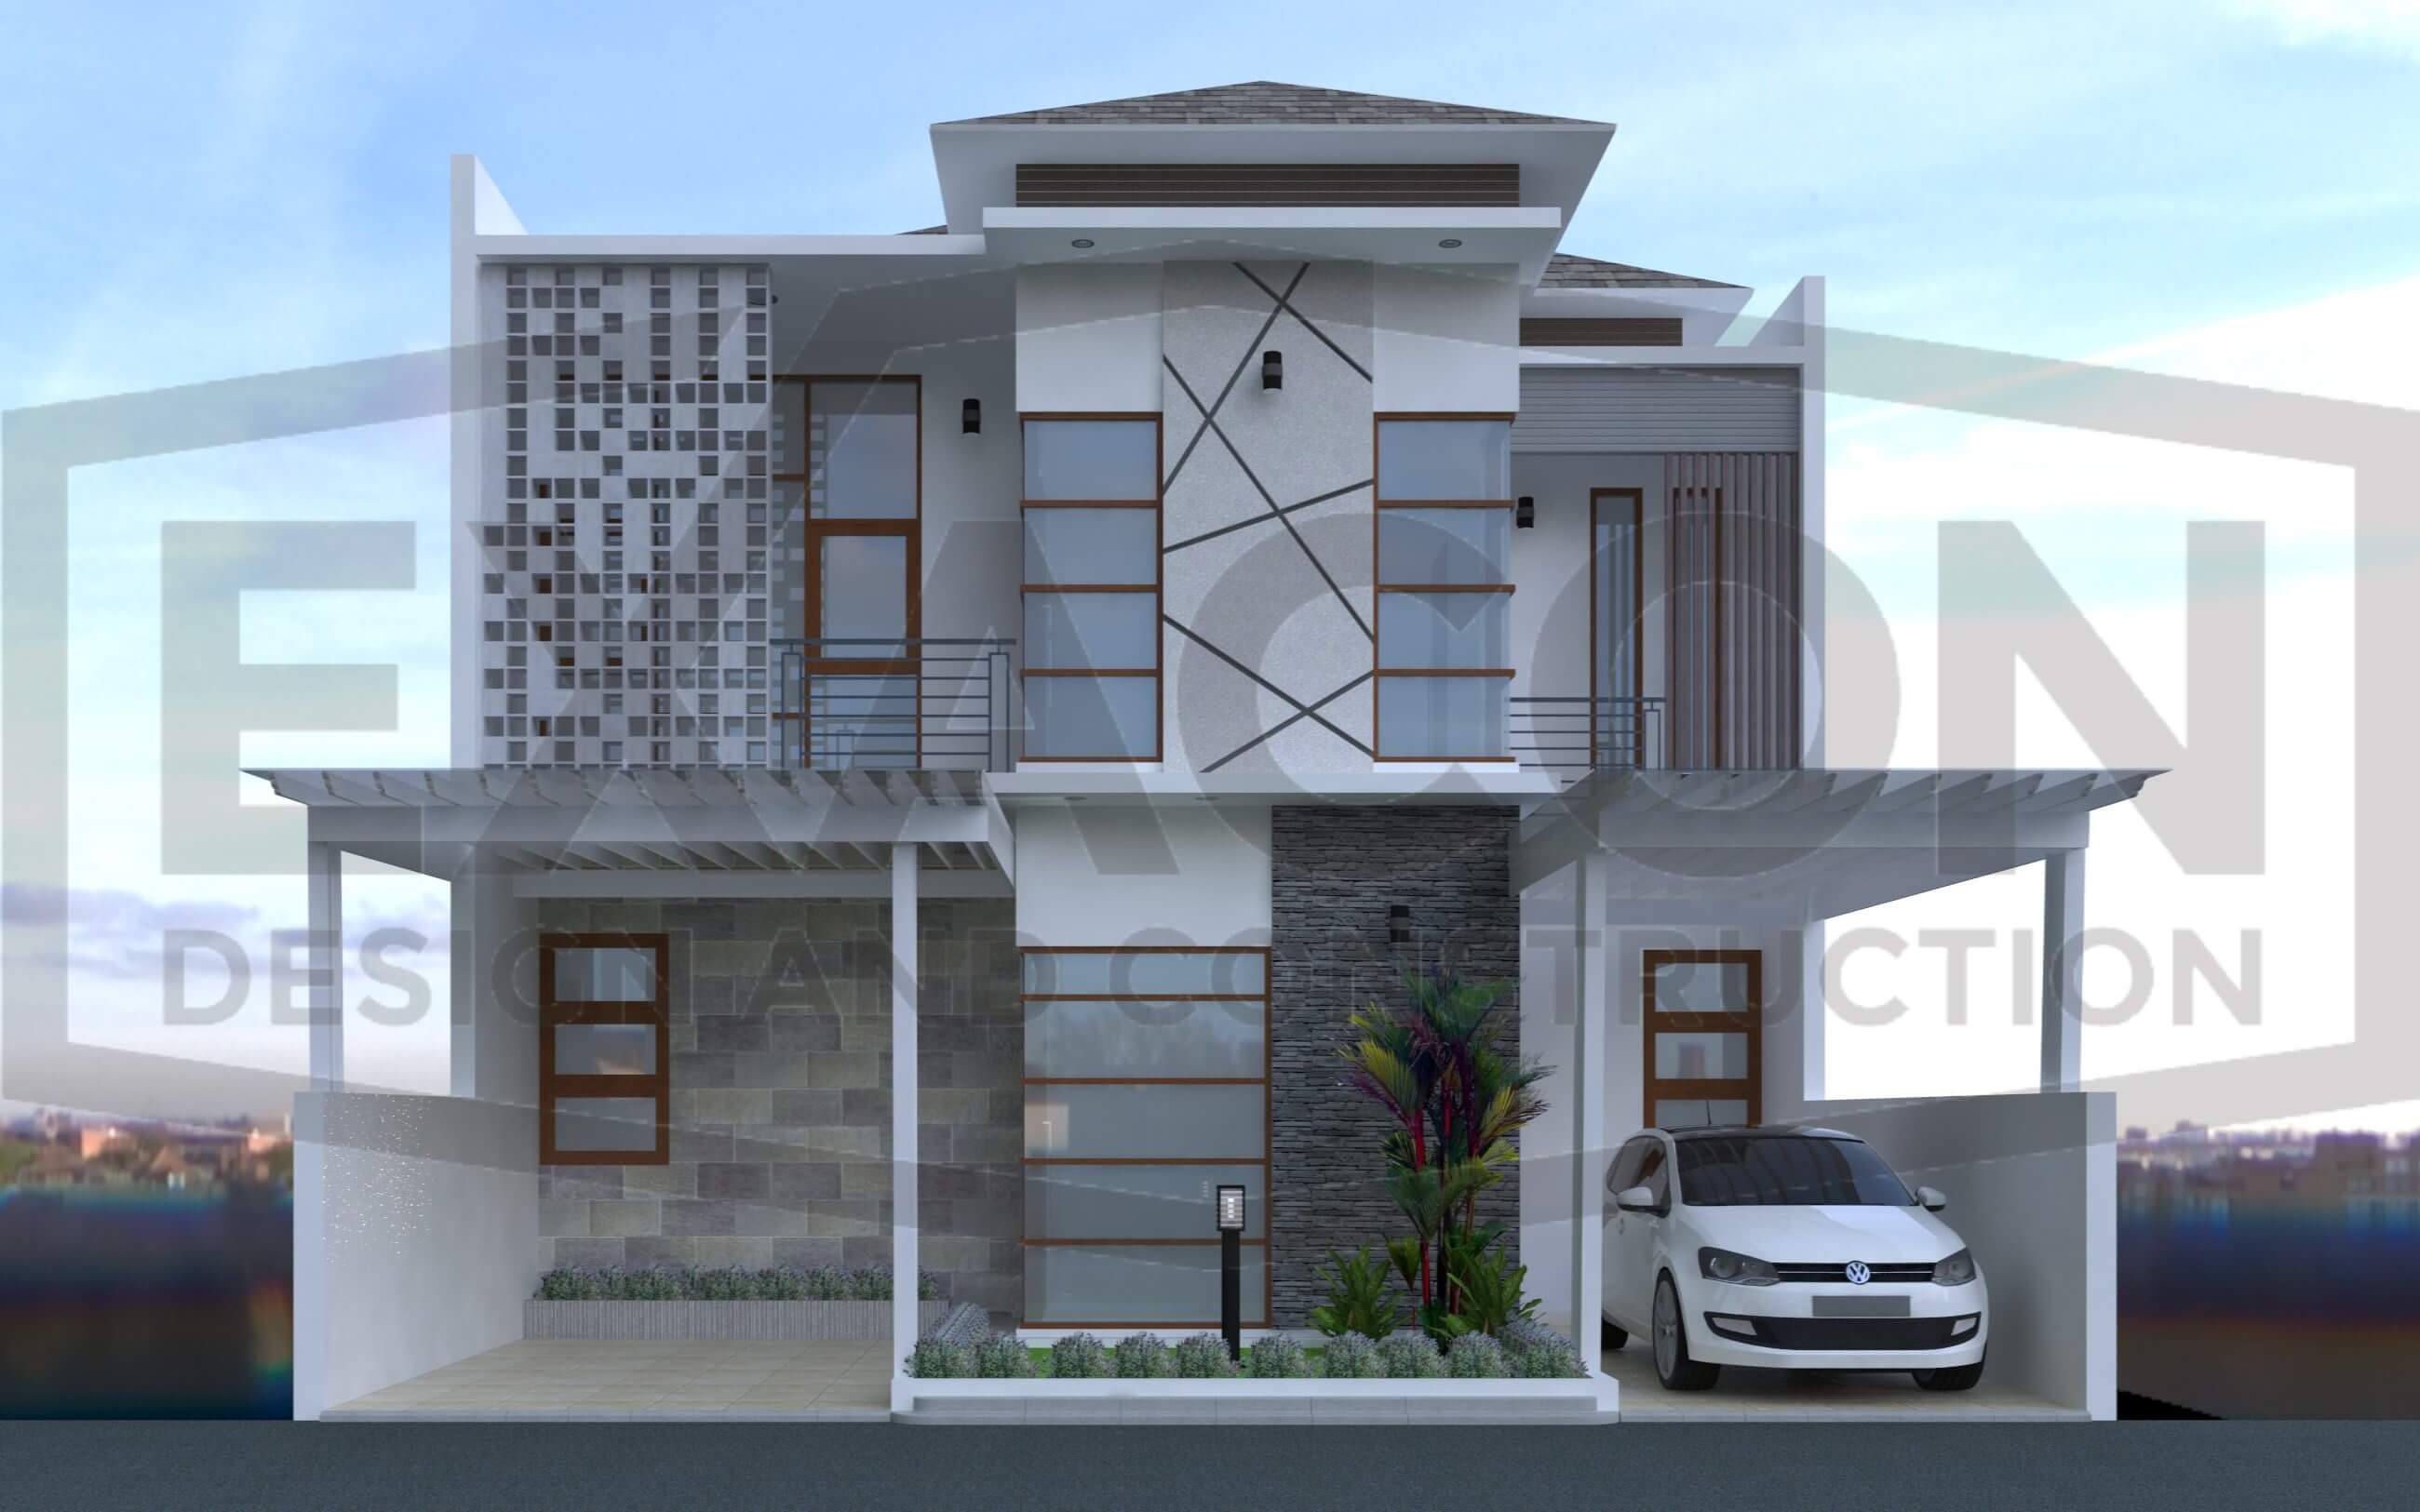 59 Contoh Desain Rumah Minimalis Modern Di Bandung Terbaru dan Terbaik